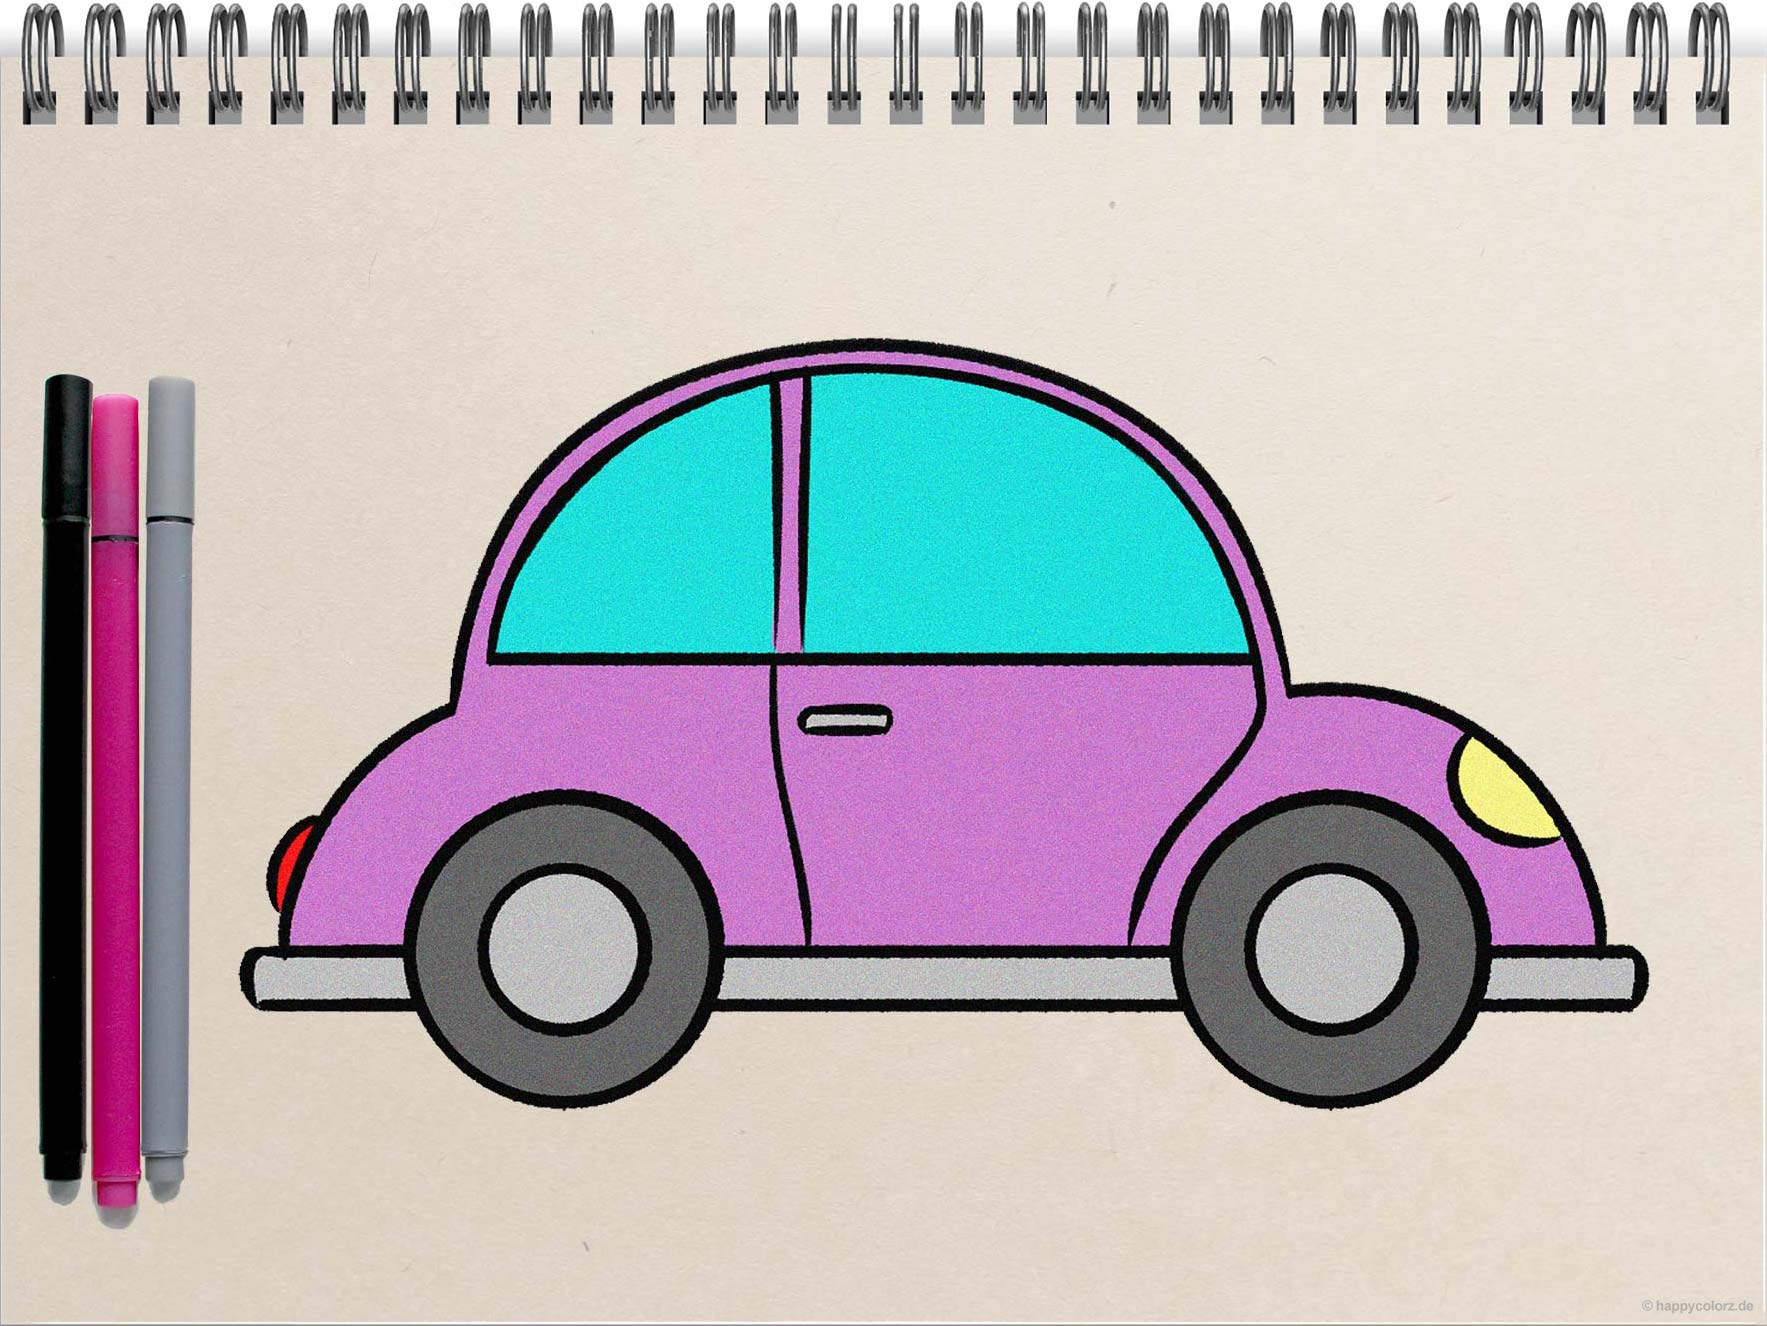 Einfaches Auto zeichnen - Schritt-für-Schritt Anleitung mit Vorlagen